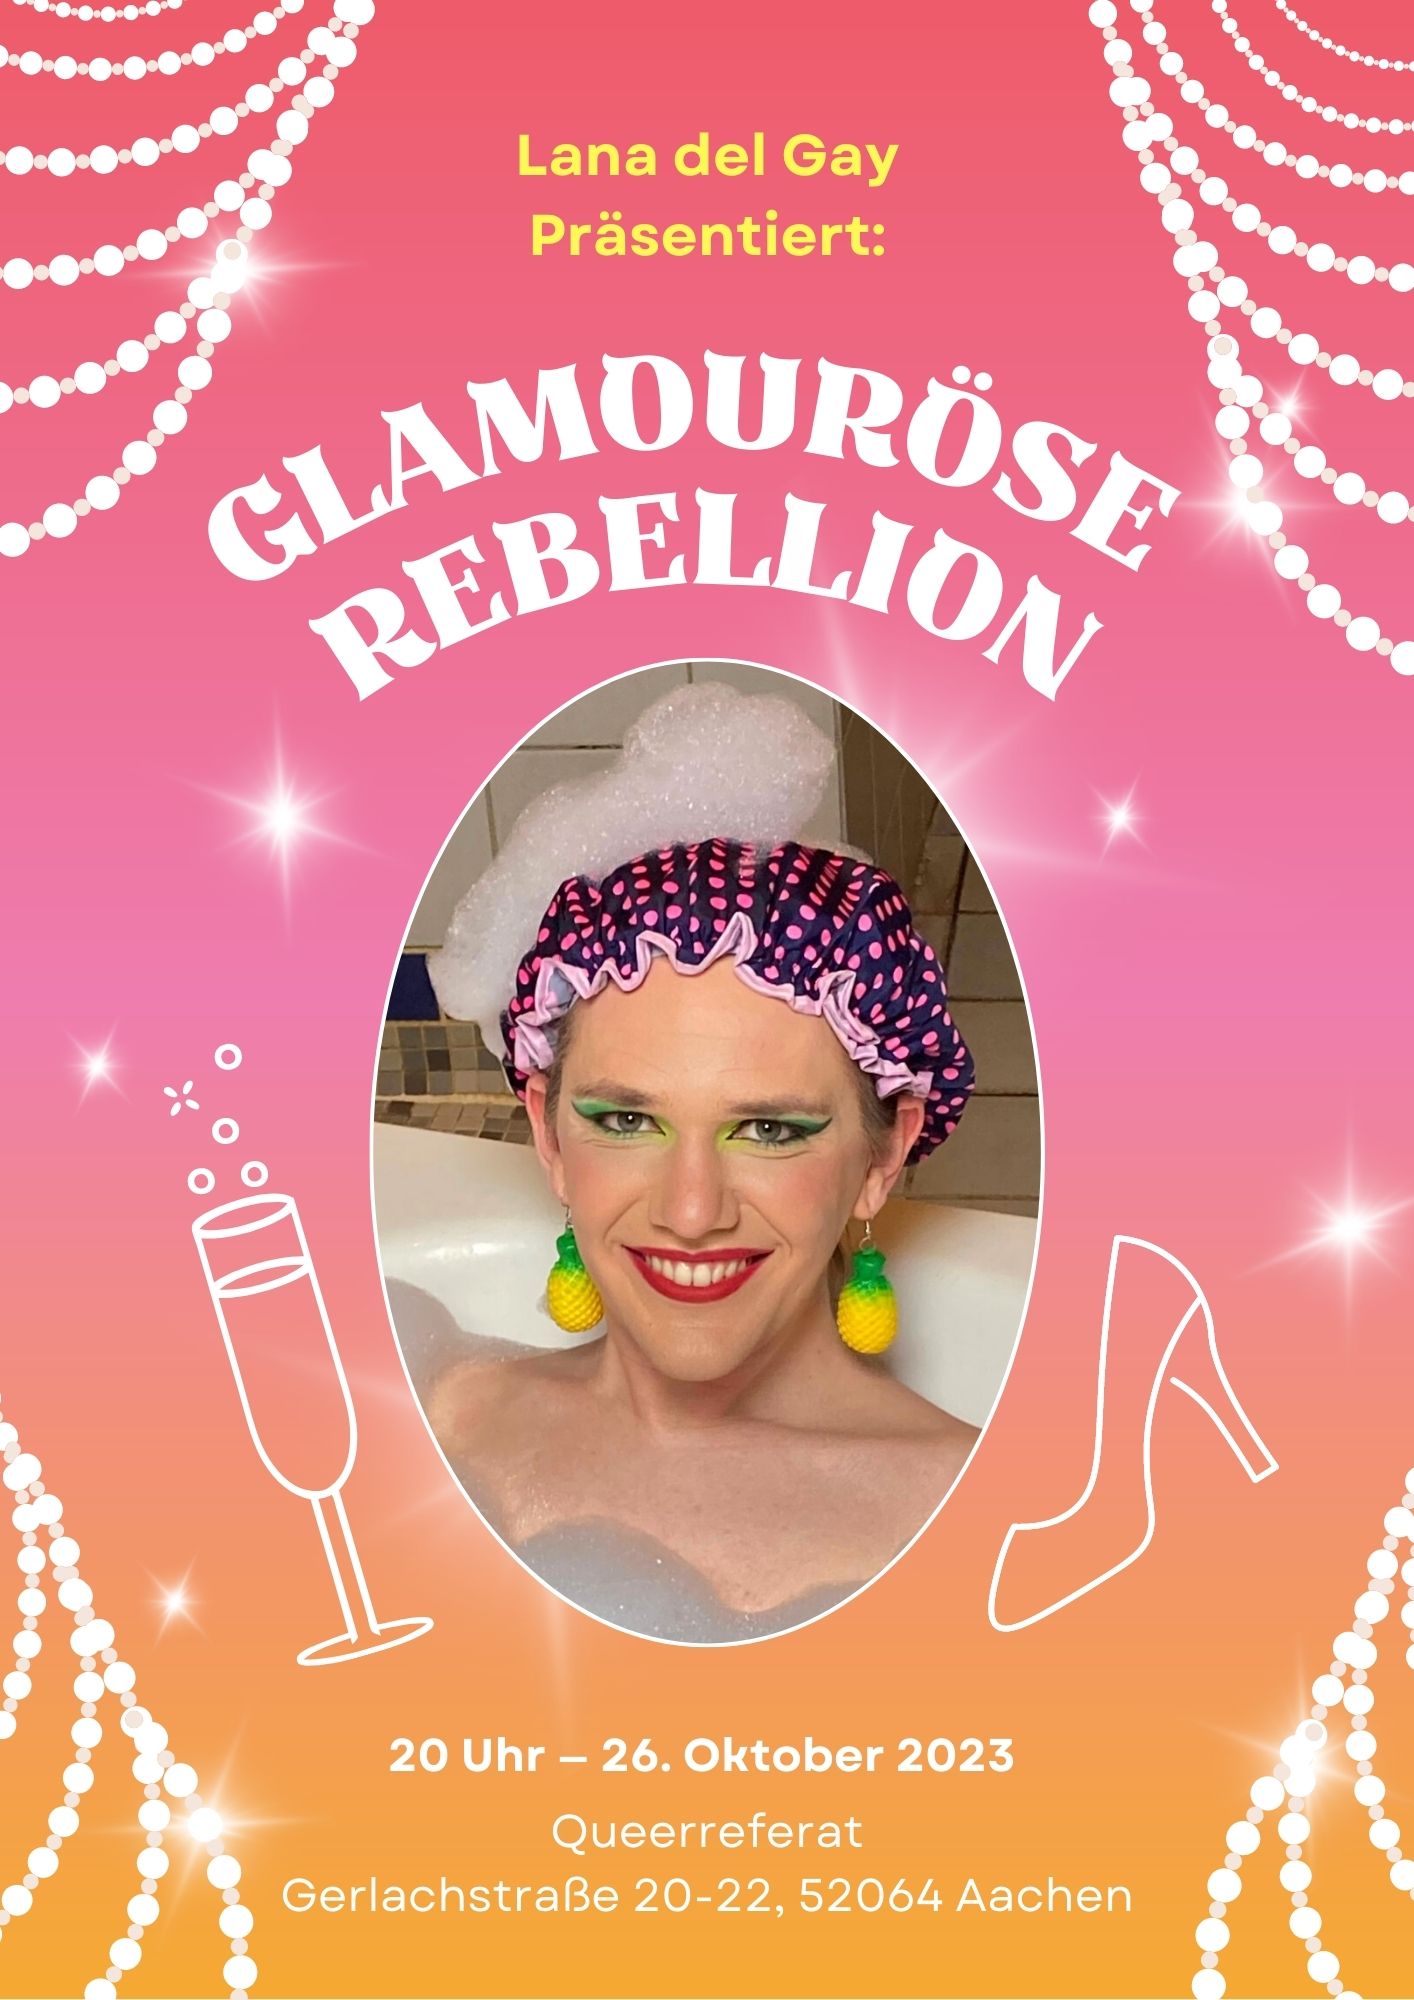 Vortrag: “Glamouröse Rebellion”